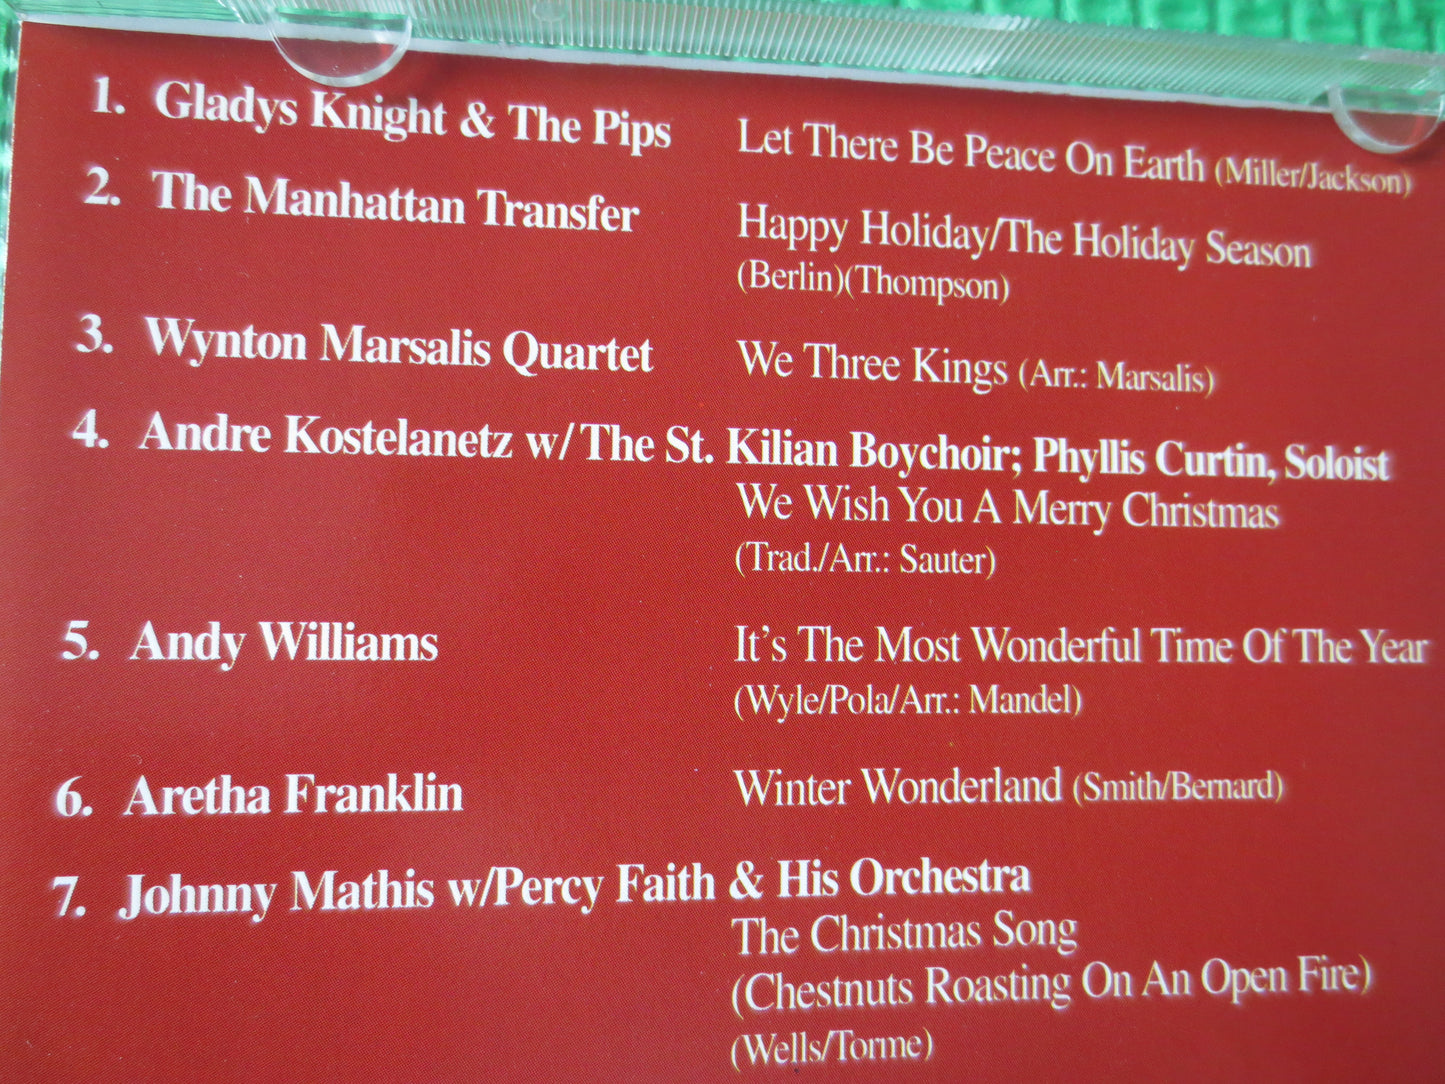 CHRISTMAS MUSIC, All Star CHRISTMAS, Christmas Tunes, Christmas Songs, Christmas Hymns, Cd Music, Music Cds, cd, Compact Discs